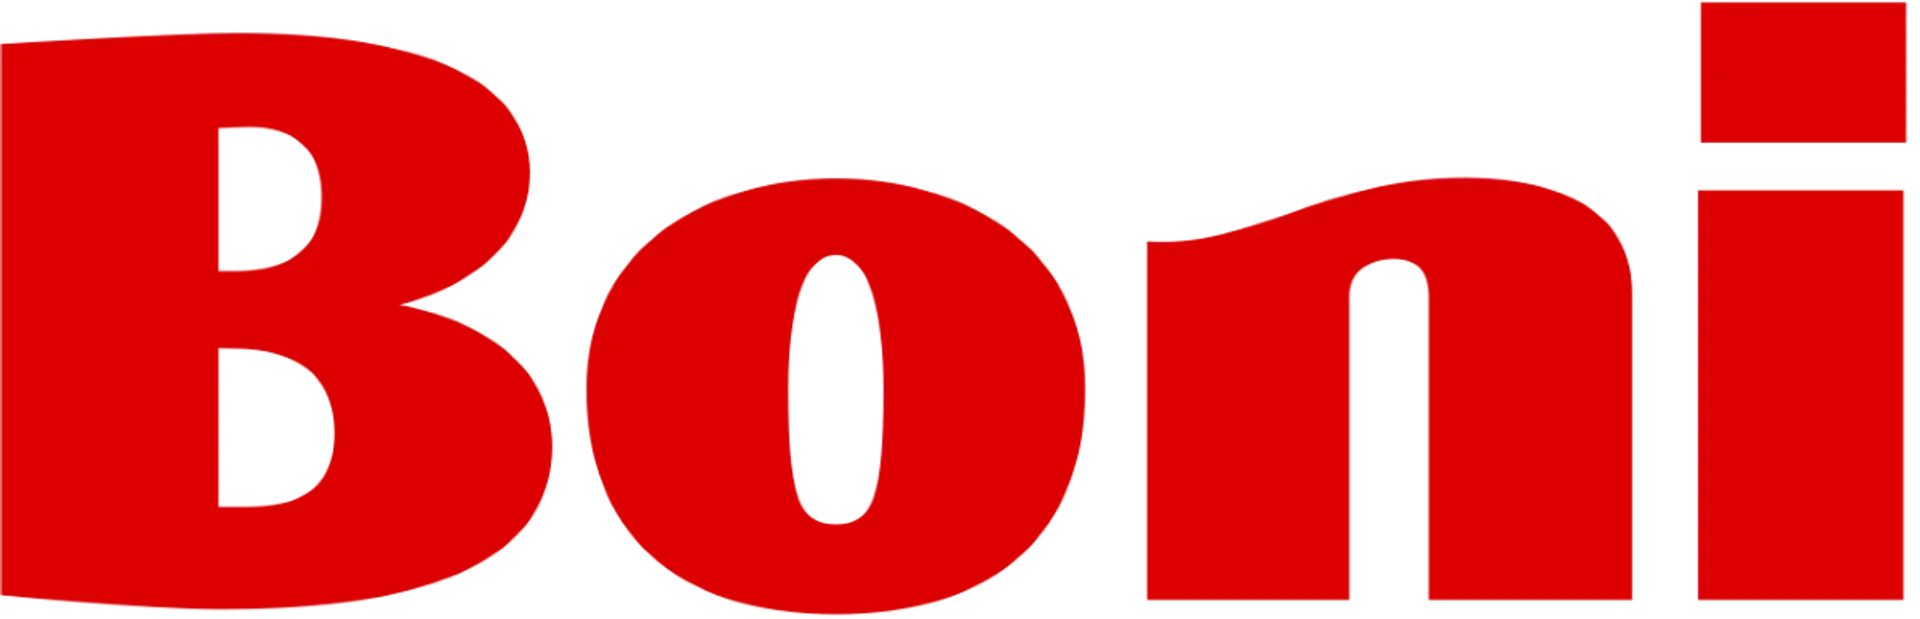 BONI logo